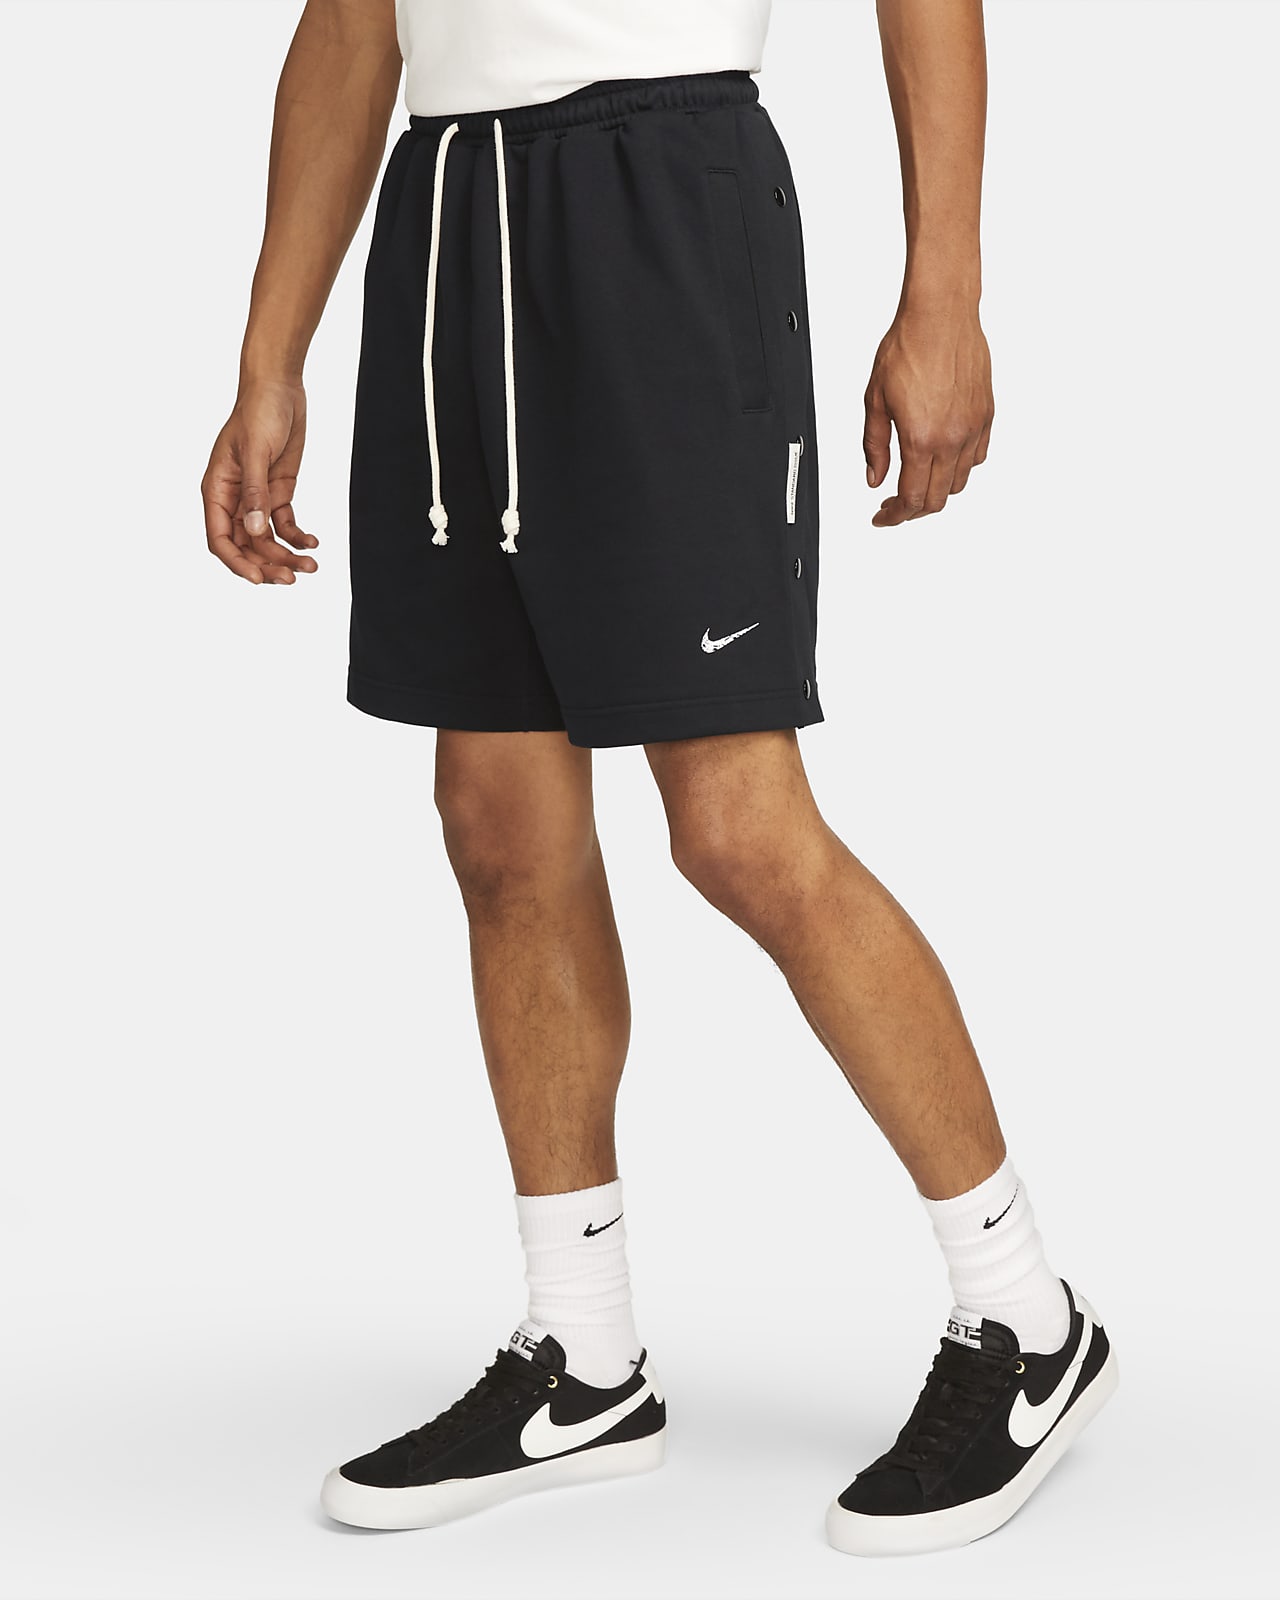 Nike Dri-FIT Starting 5 Men's Basketball Shorts Black/Gym Red